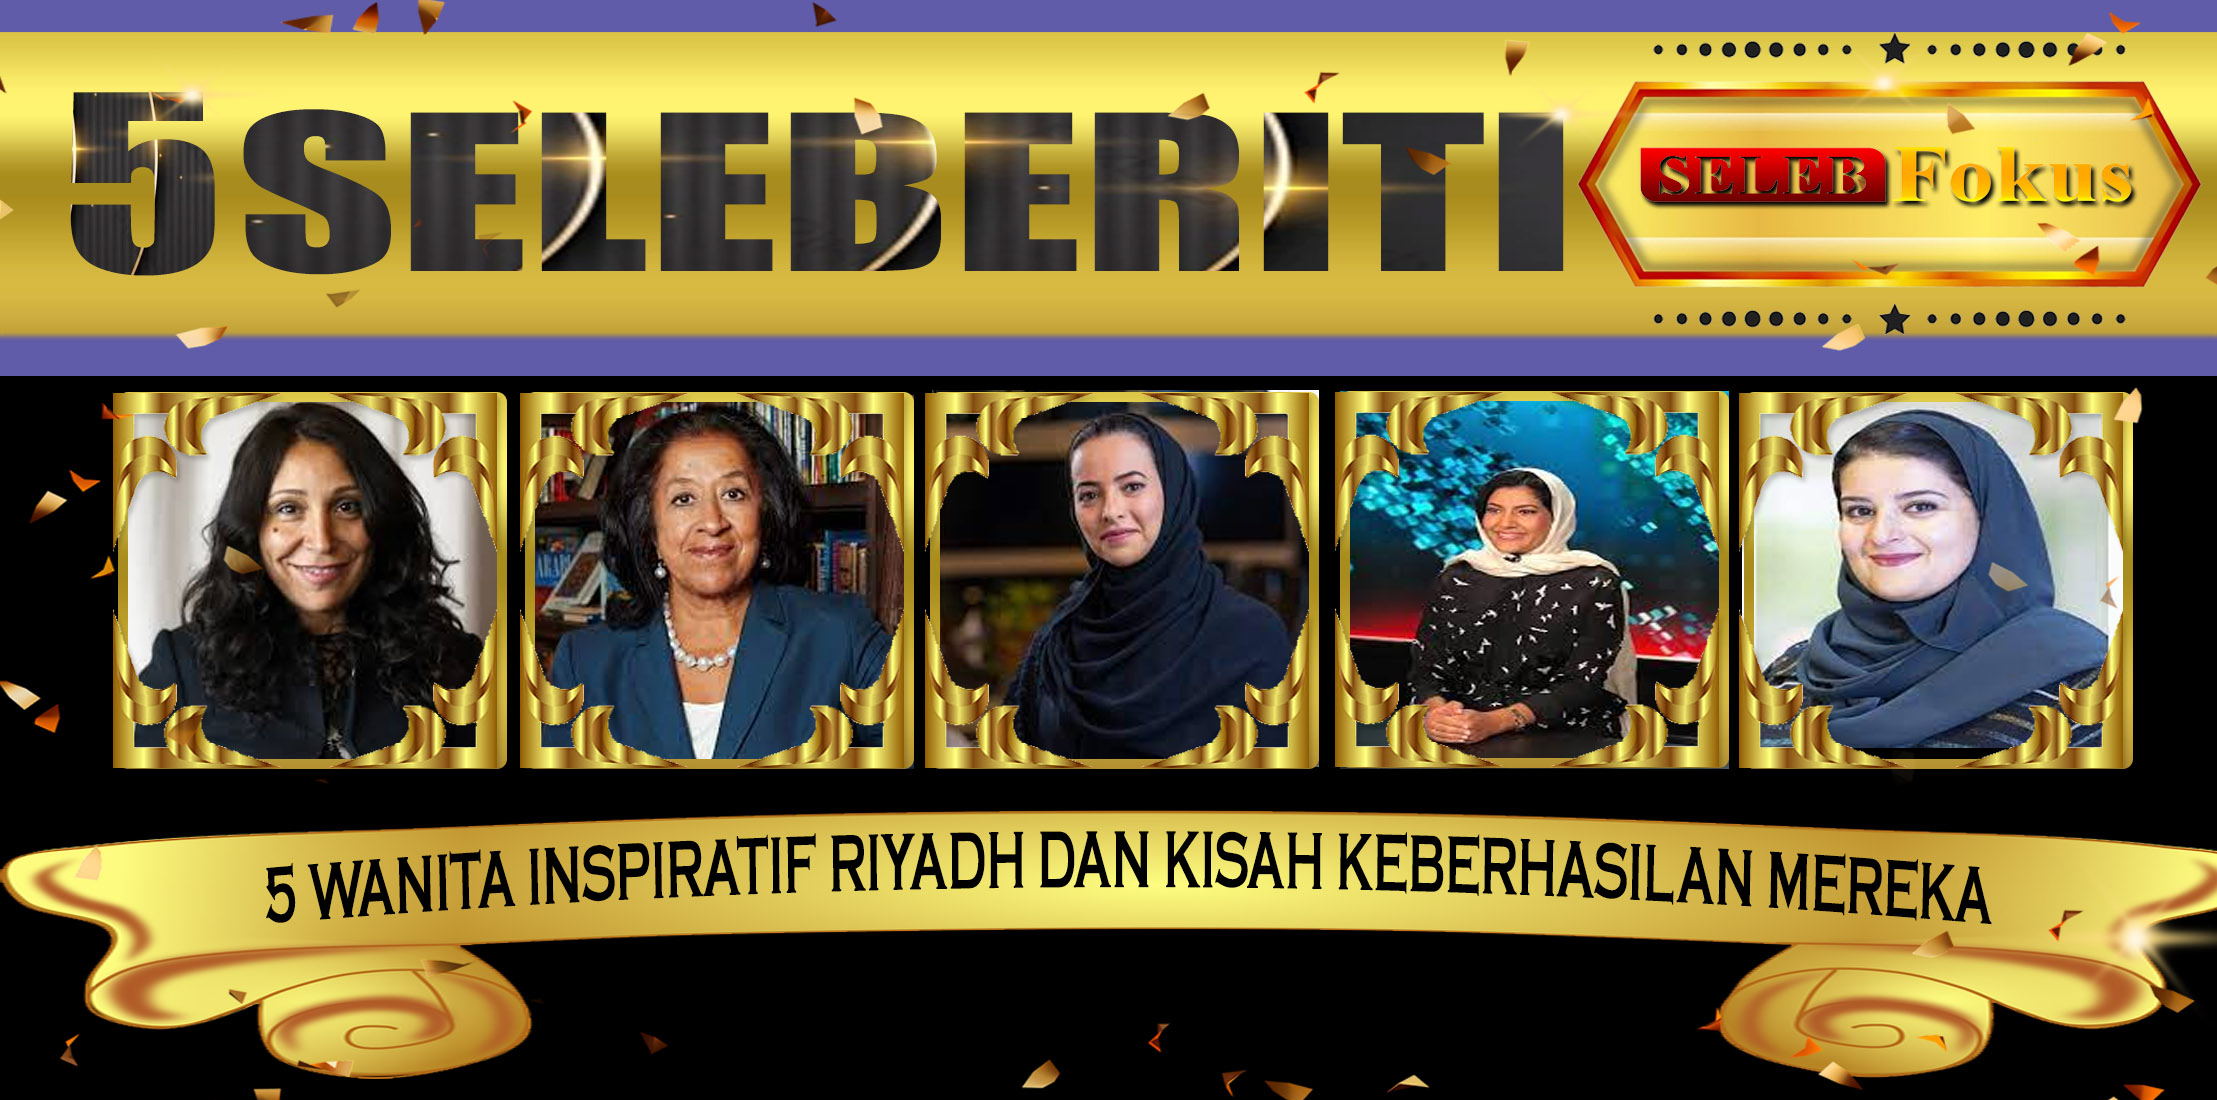 5 Wanita Inspiratif Riyadh dan Kisah Keberhasilan Mereka